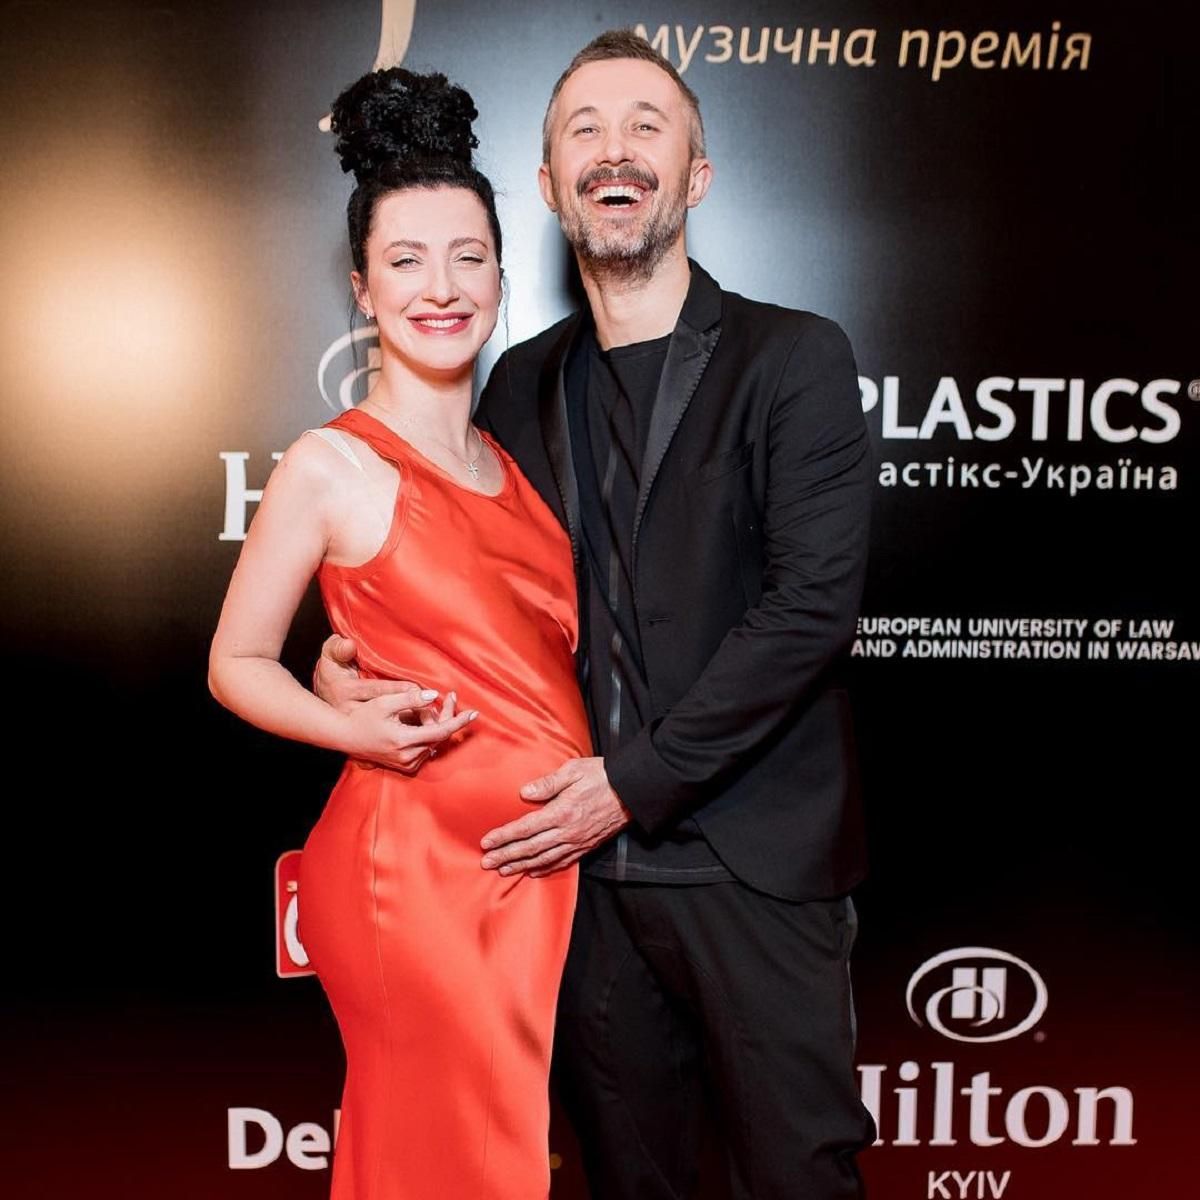 Сергей Бабкин вышел на красную дорожку с беременной женой: счастливые фото